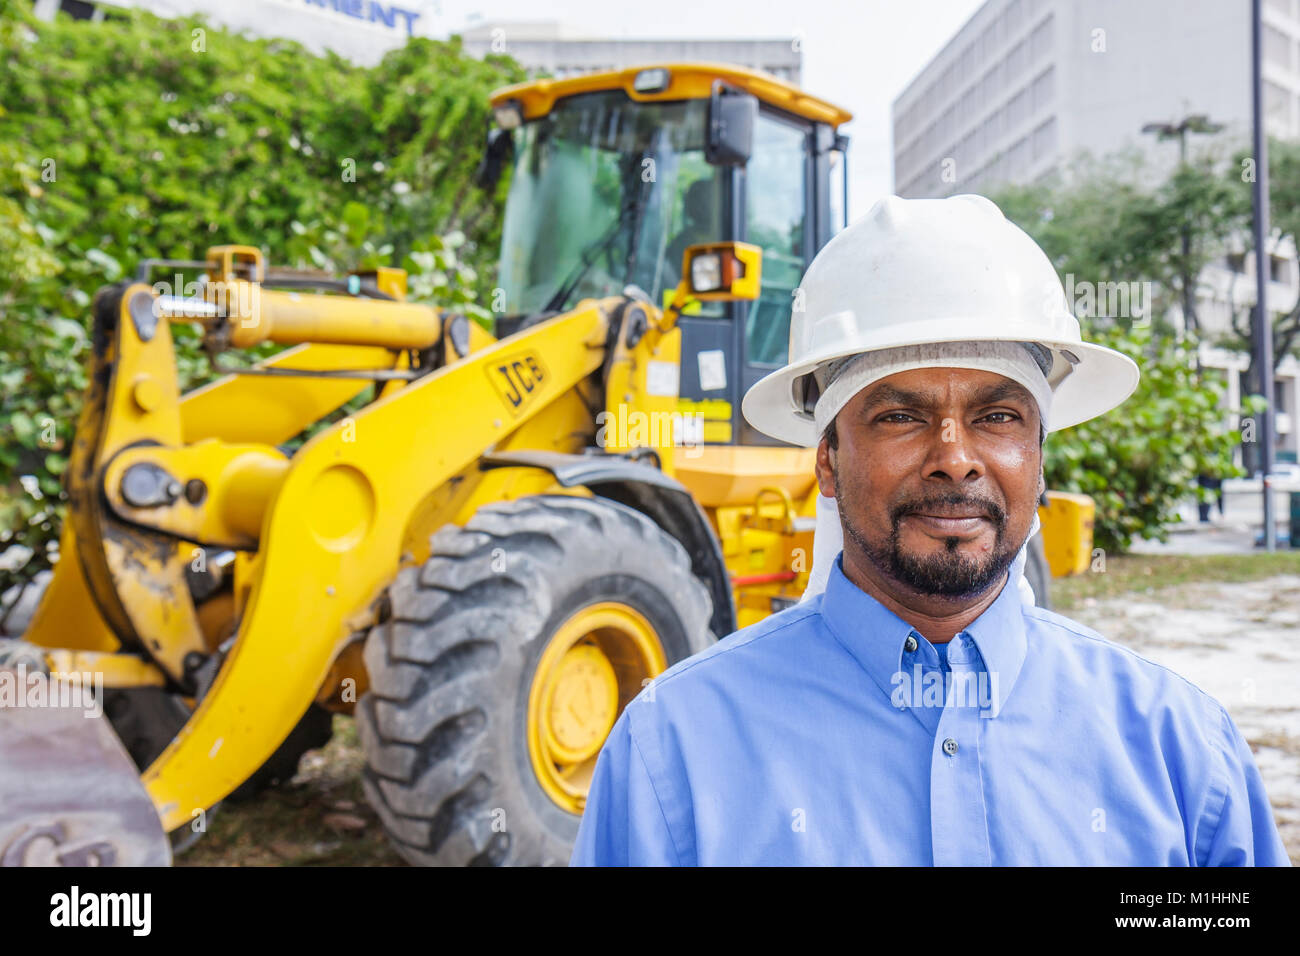 Miami Florida,homme asiatique hommes,casque dur,opérateur de pelle rétro,sous un nouveau chantier de construction, FL080117034 Banque D'Images